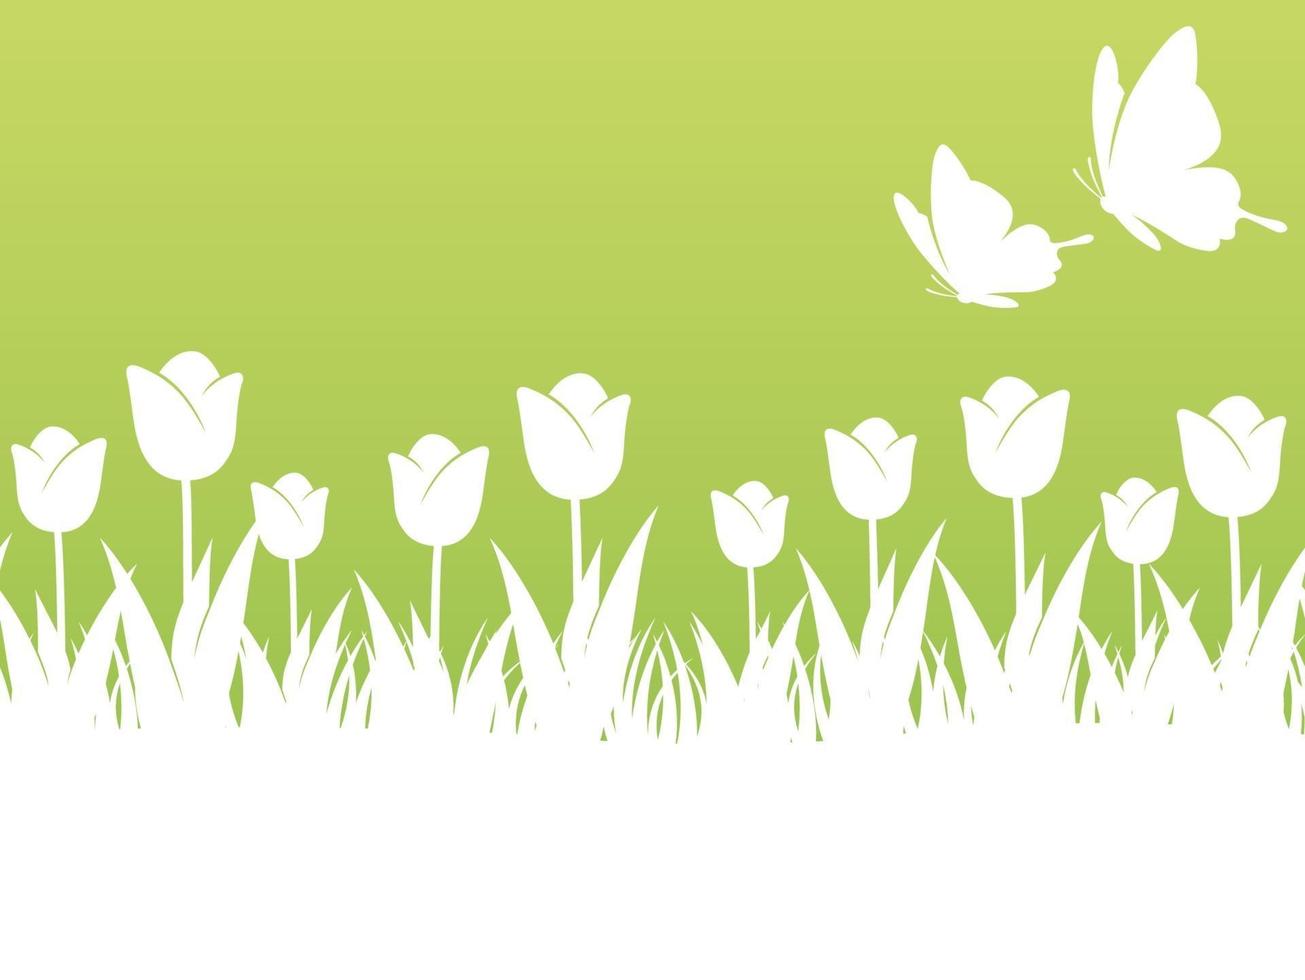 Frühlingshintergrundillustration mit Tulpen, Schmetterlingen und Textraum. horizontal wiederholbar. vektor